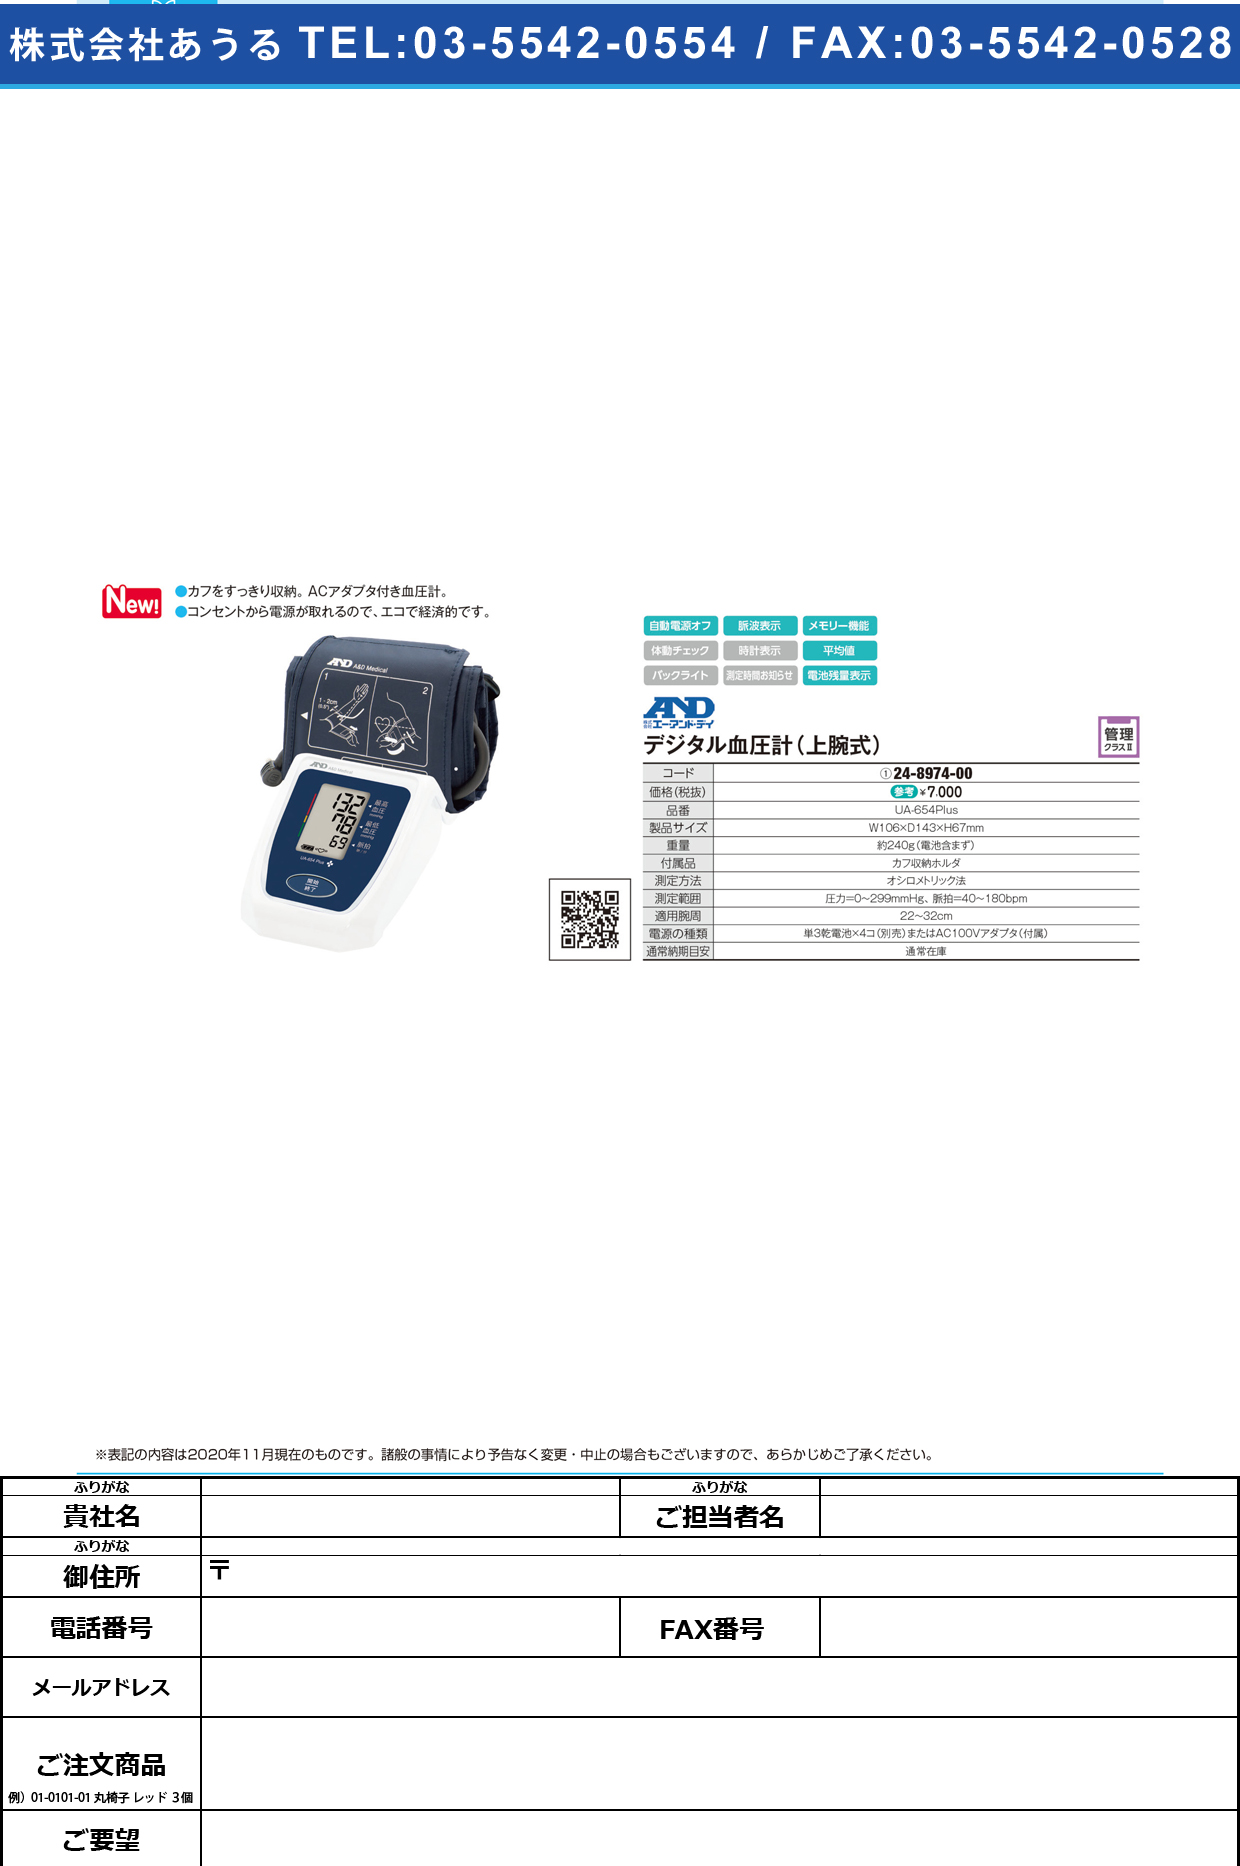 デジタル血圧計(上腕式) UA-654PLUSUA-654PLUS(24-8974-00)【エー・アンド・デイ】(販売単位:1)